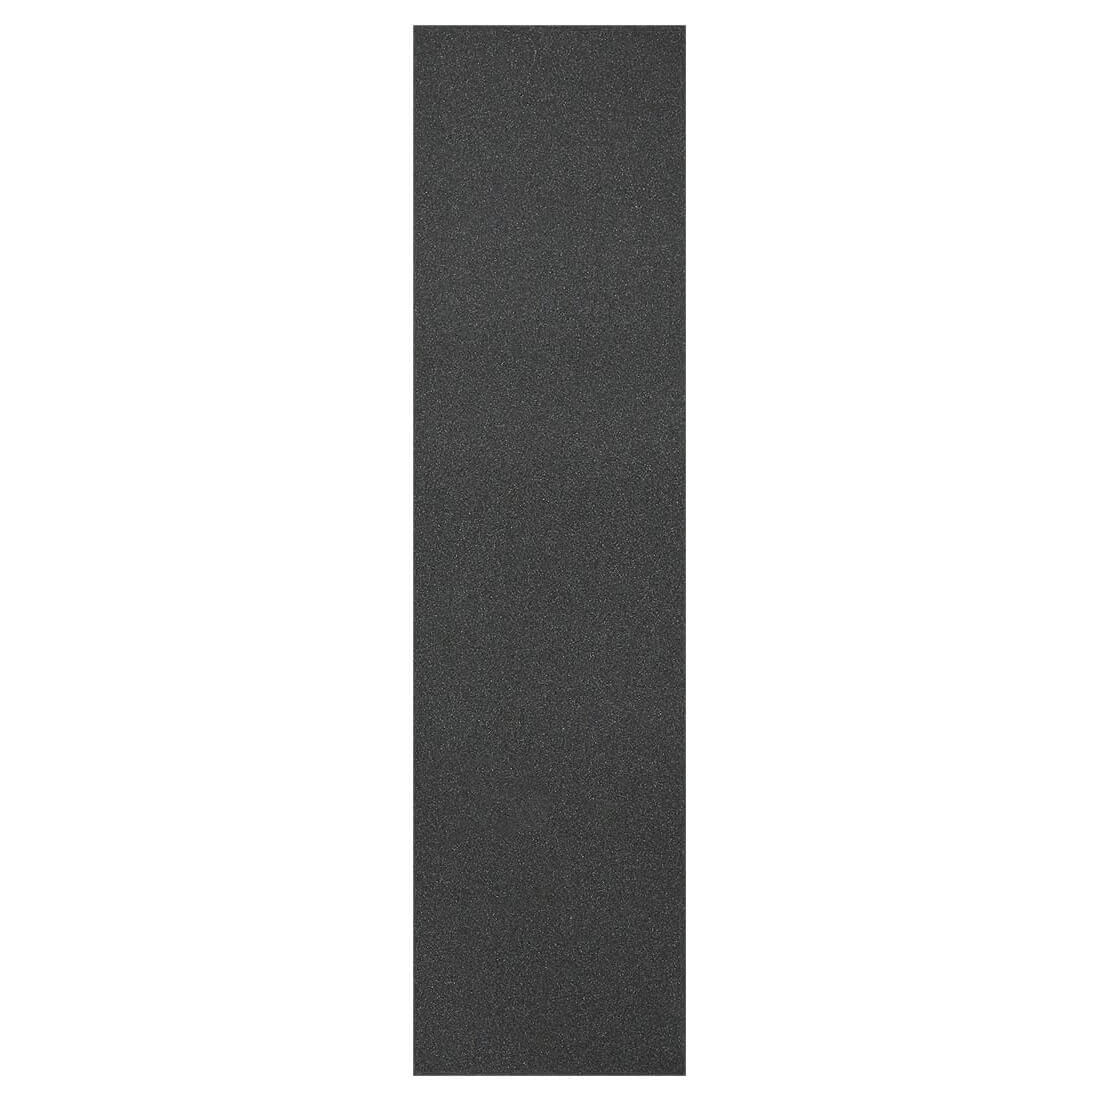 Наждак MAGAMAEV Perforated Griptape (Black)